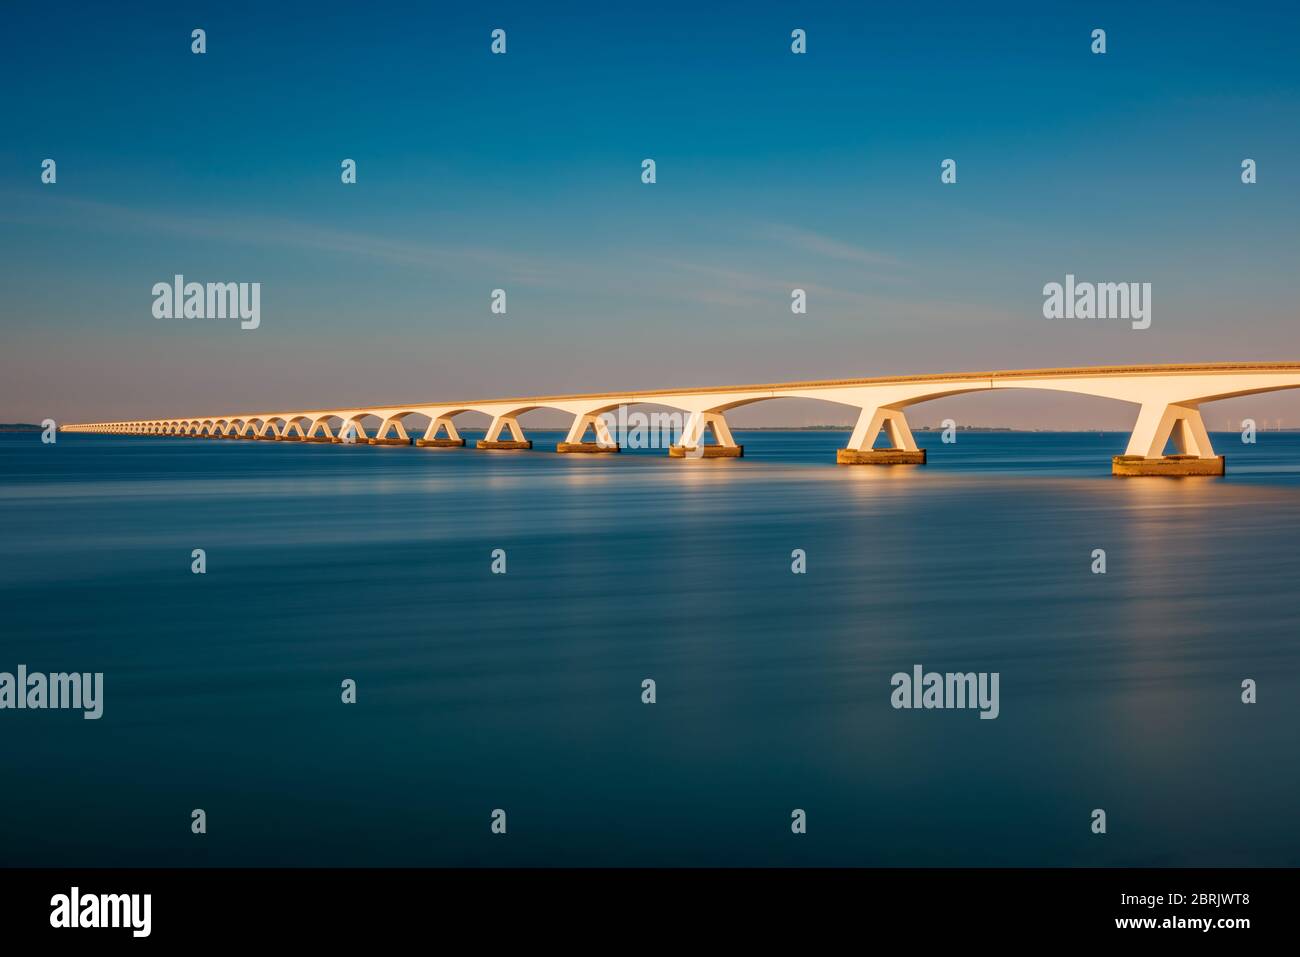 Exposition longue du pont de Zeeland à Zierikzee, province de Zeeland, pays-Bas, autour du coucher du soleil. Avec 5 km, c'est le plus long pont des pays-Bas. Banque D'Images